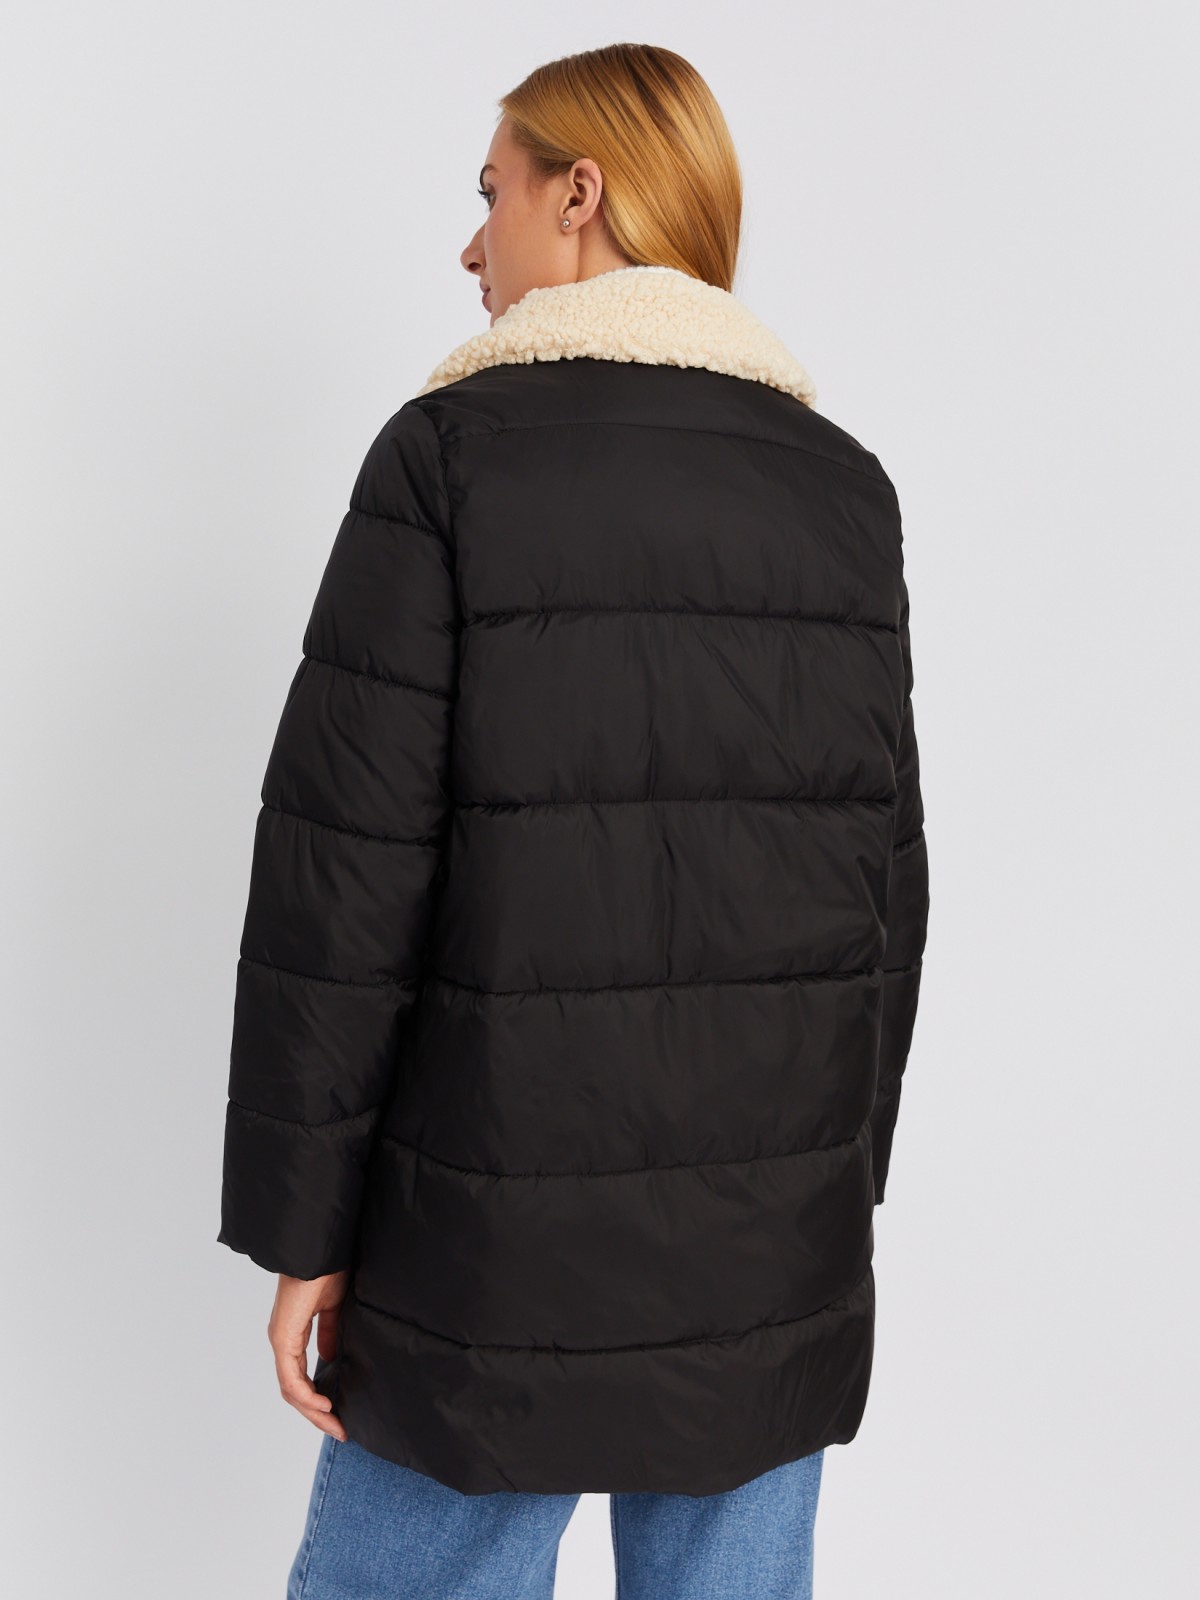 Тёплая стёганая куртка-пальто с отложным воротником и отделкой из искусственного меха zolla 023335239014, цвет черный, размер XS - фото 6